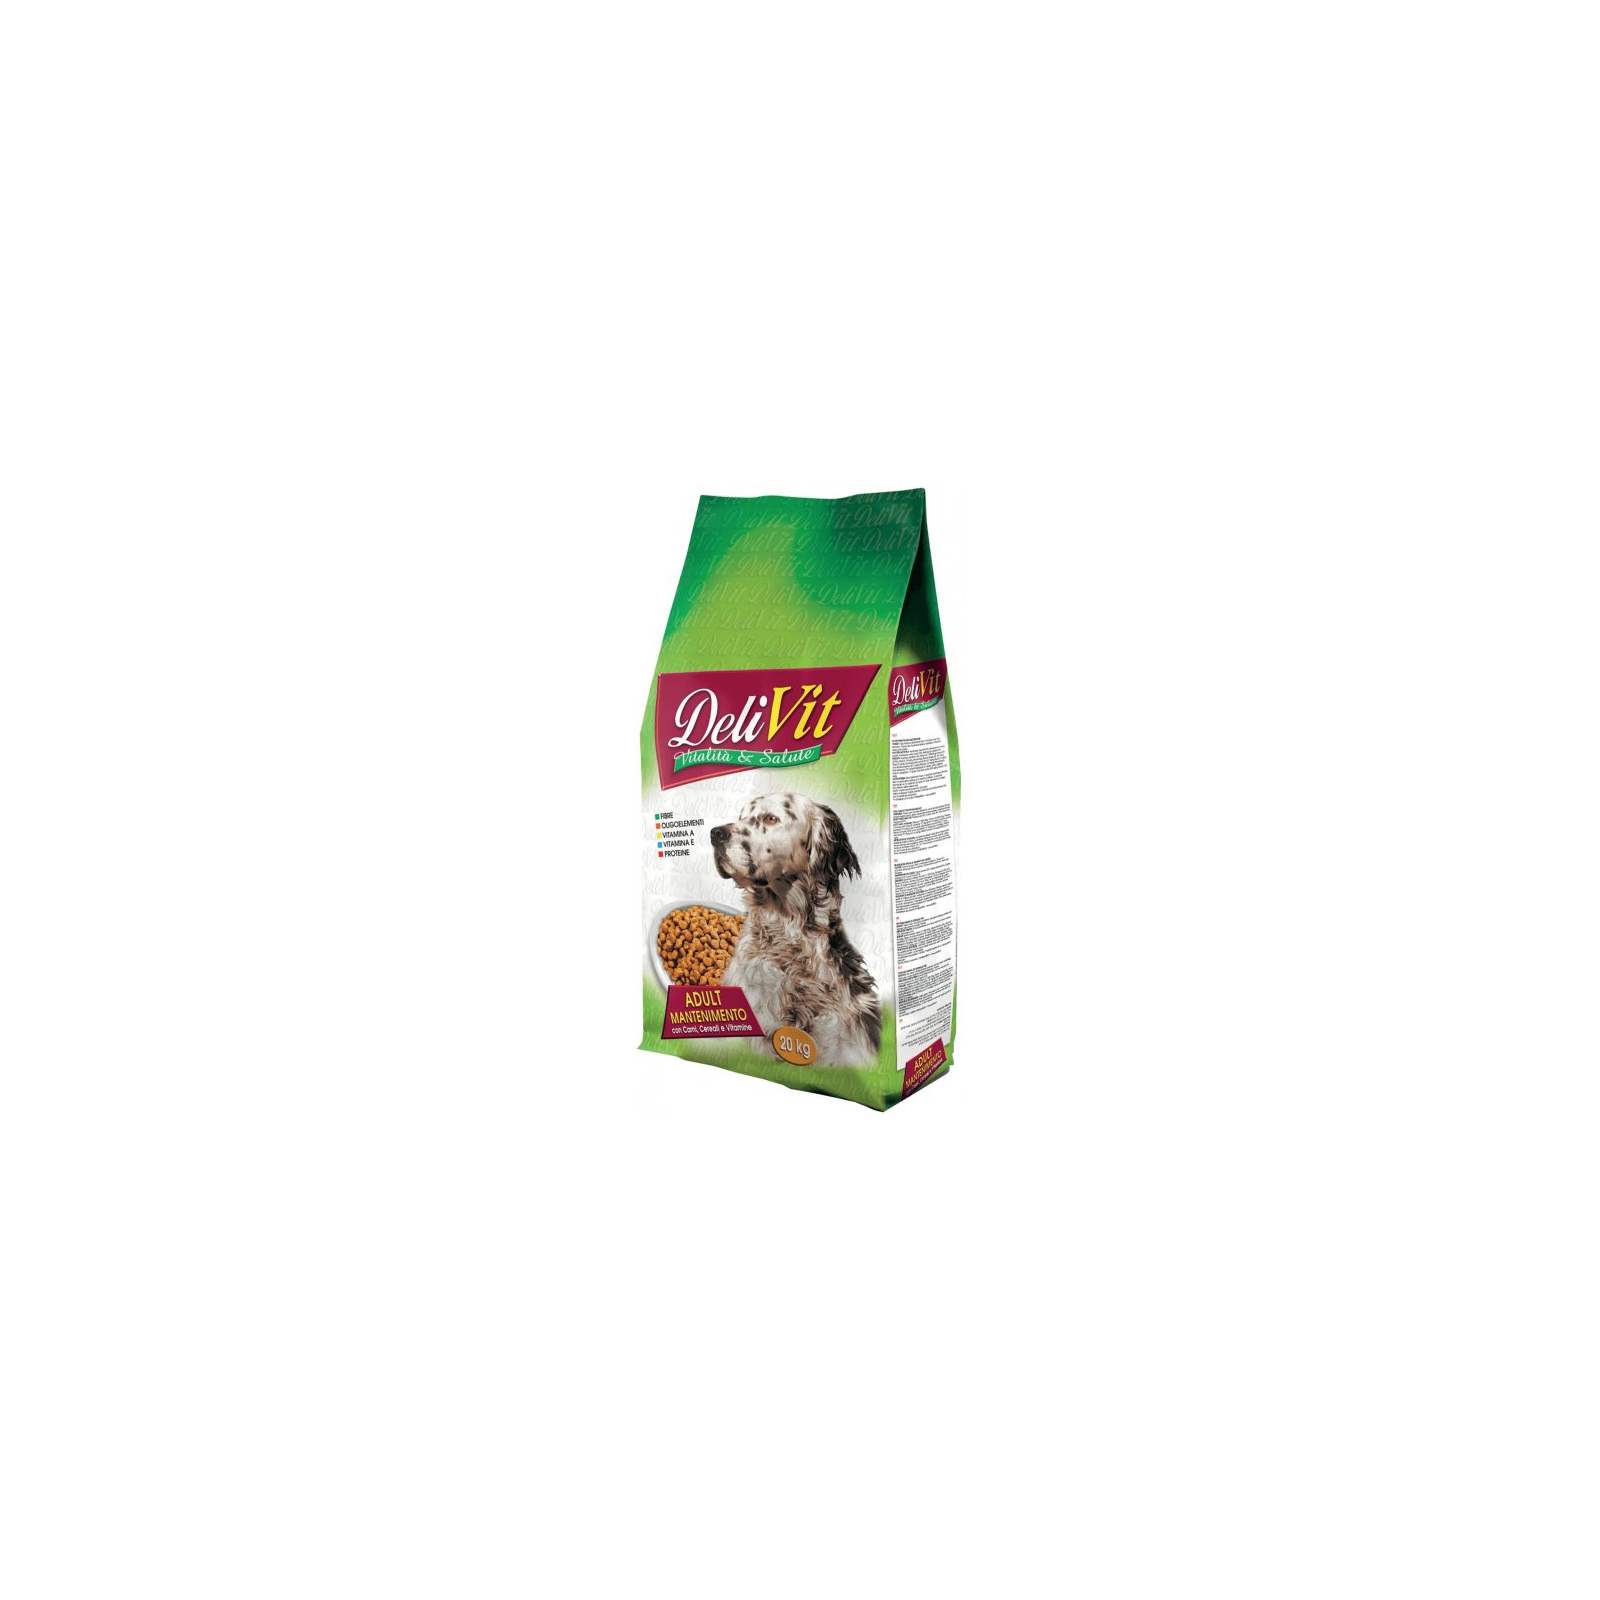 Сухой корм для собак DeliVit Adult Mantenimento с мясом, злаками и витаминами 20 кг (8059796478236)